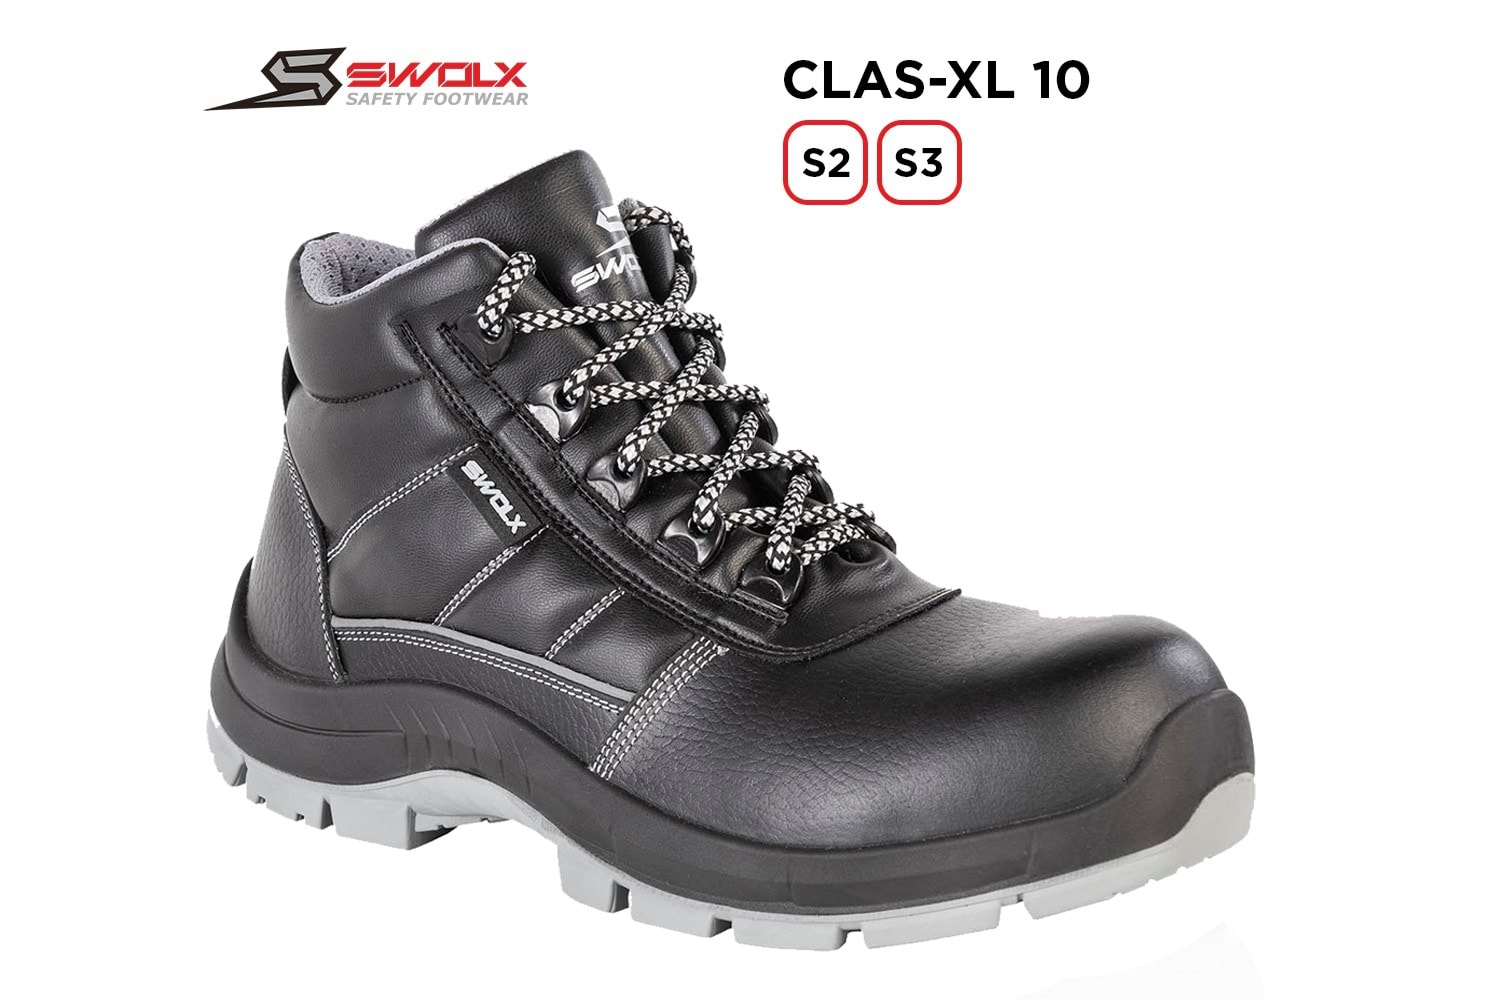 Swolx İş Ayakkabısı - Clas-Xl 10 S2 - 40